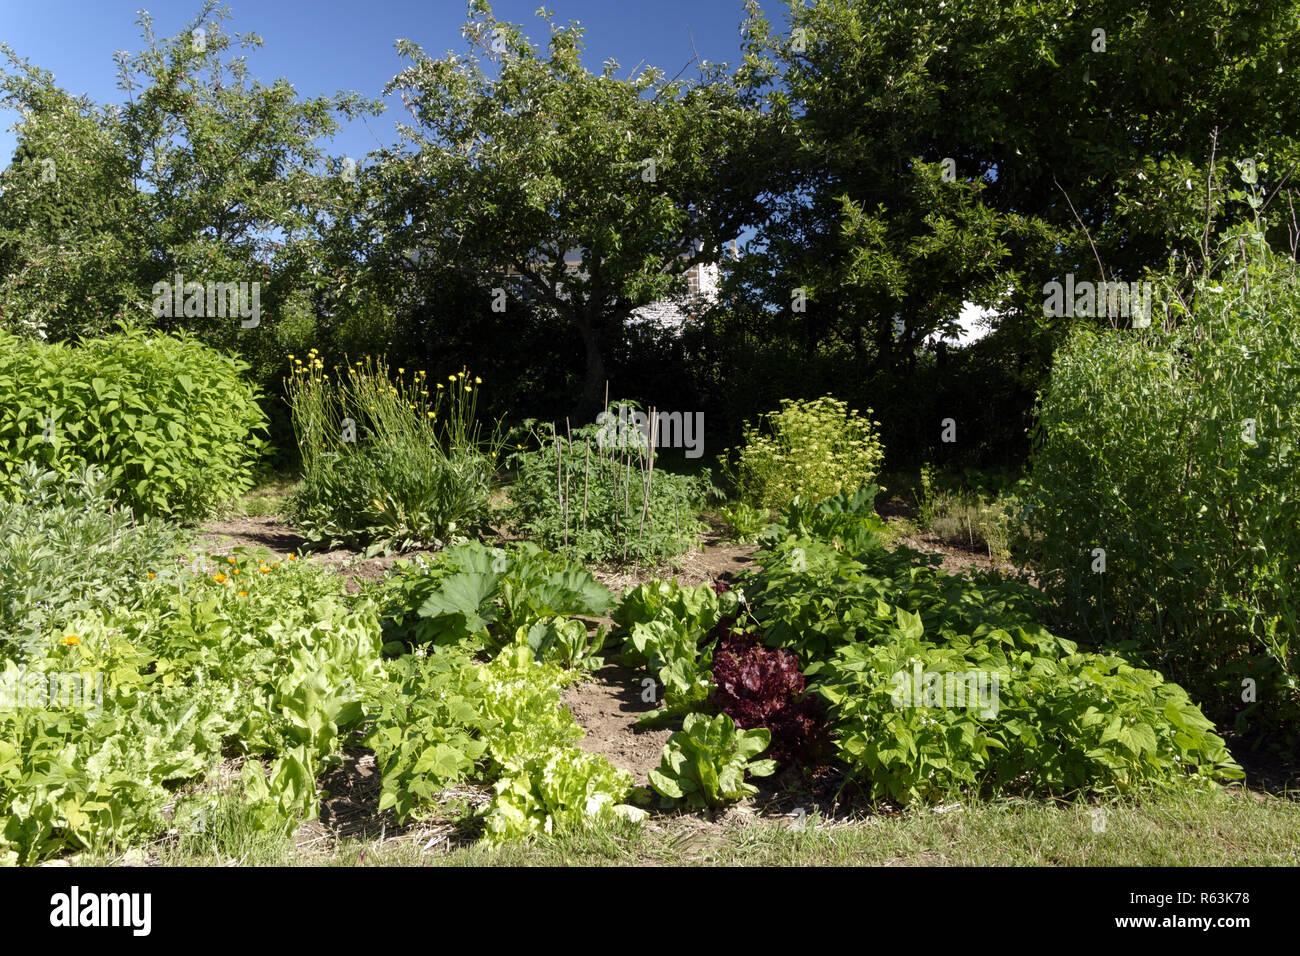 Coltivazione di verdure in giardino (fave, insalate, fagiolini piselli supportato da canne, le piante di pomodoro, prezzemolo, piante di zucchine). Foto Stock